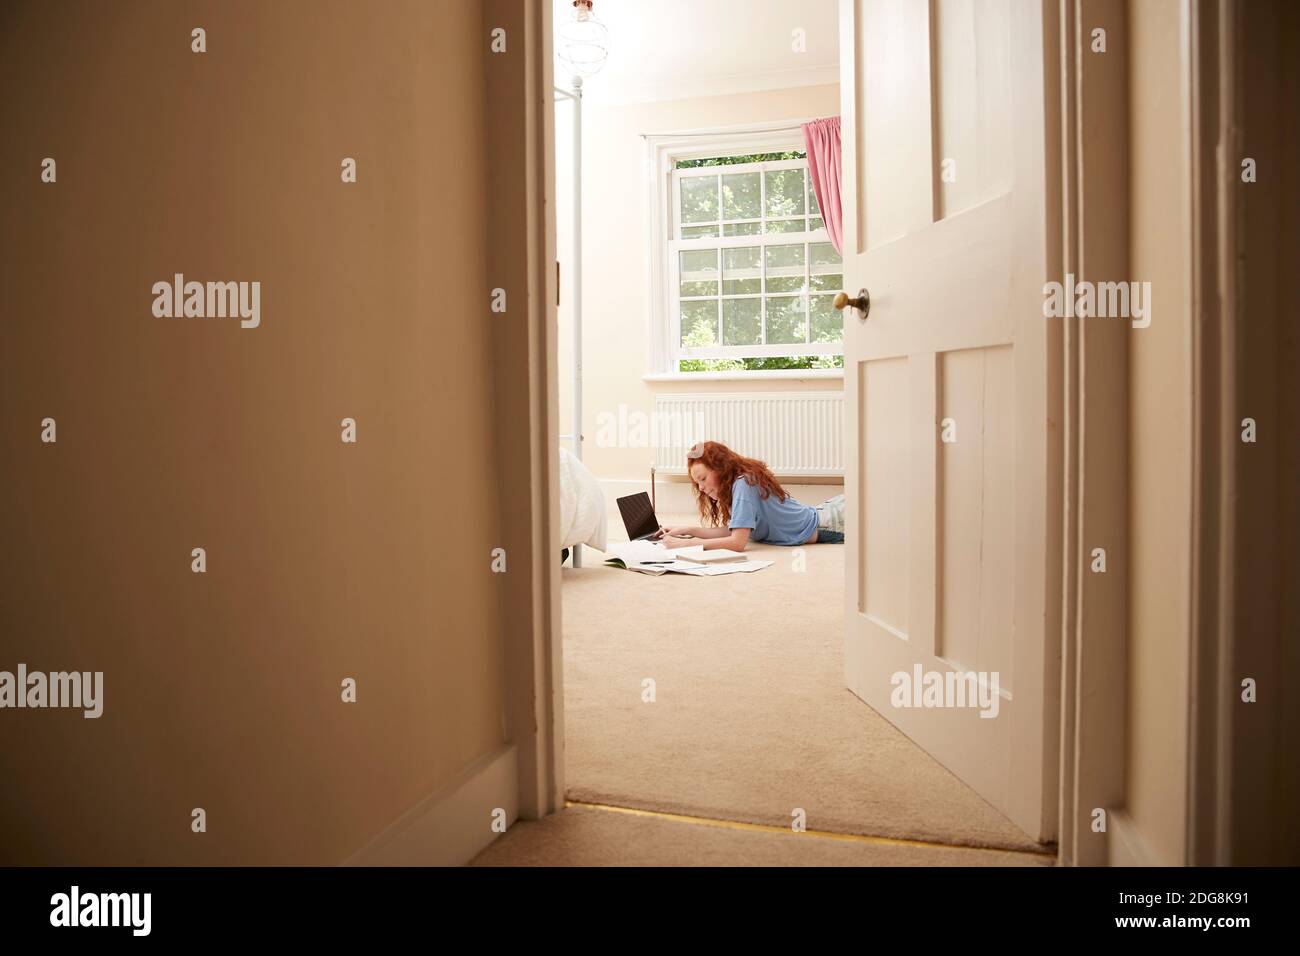 Preteen girl doing homework at laptop on bedroom floor Stock Photo